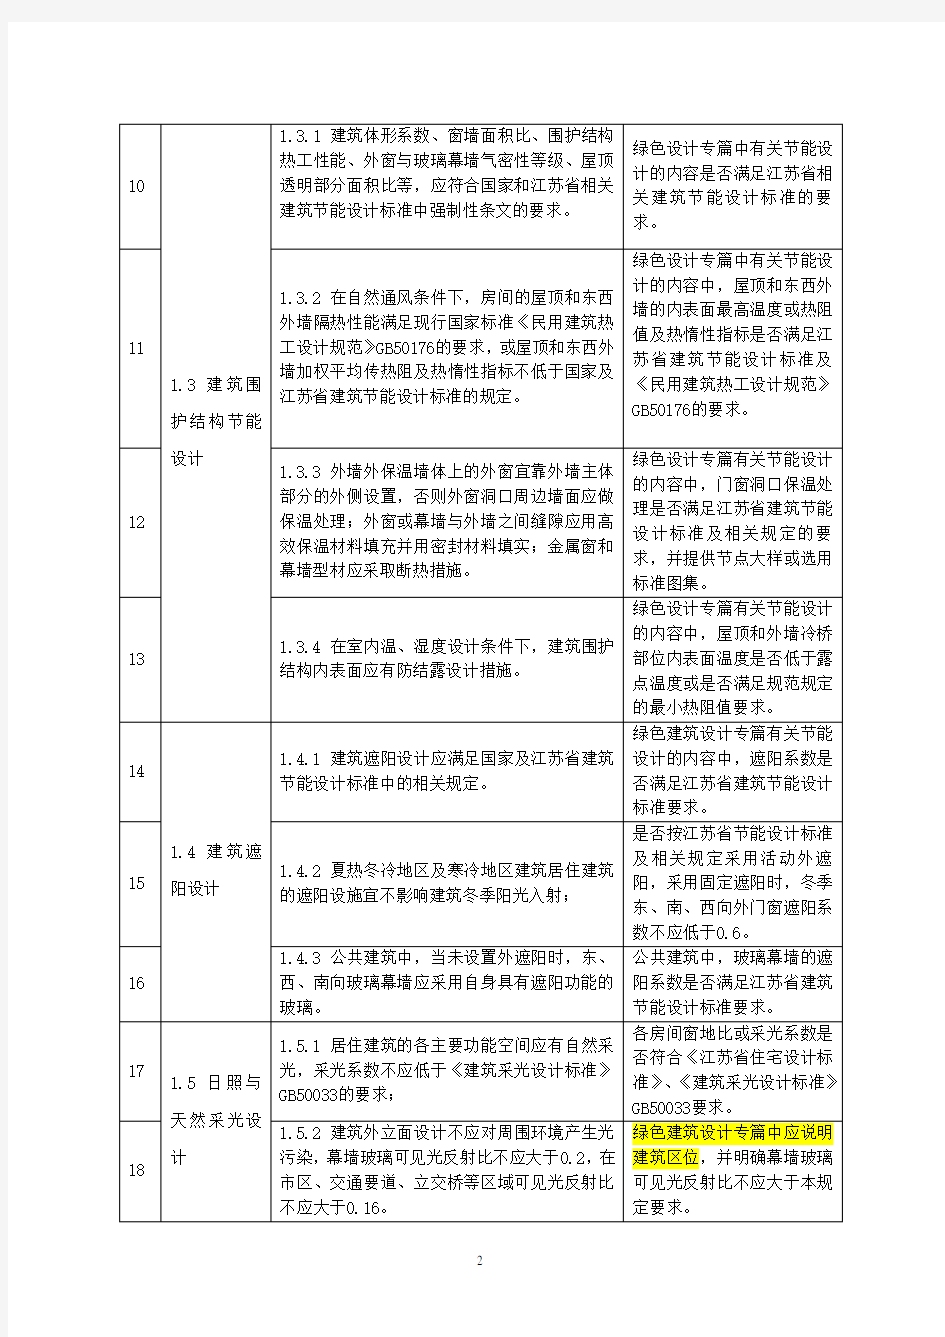 《江苏省绿色建筑施工图设计要求和施工图审查要点(试行)》